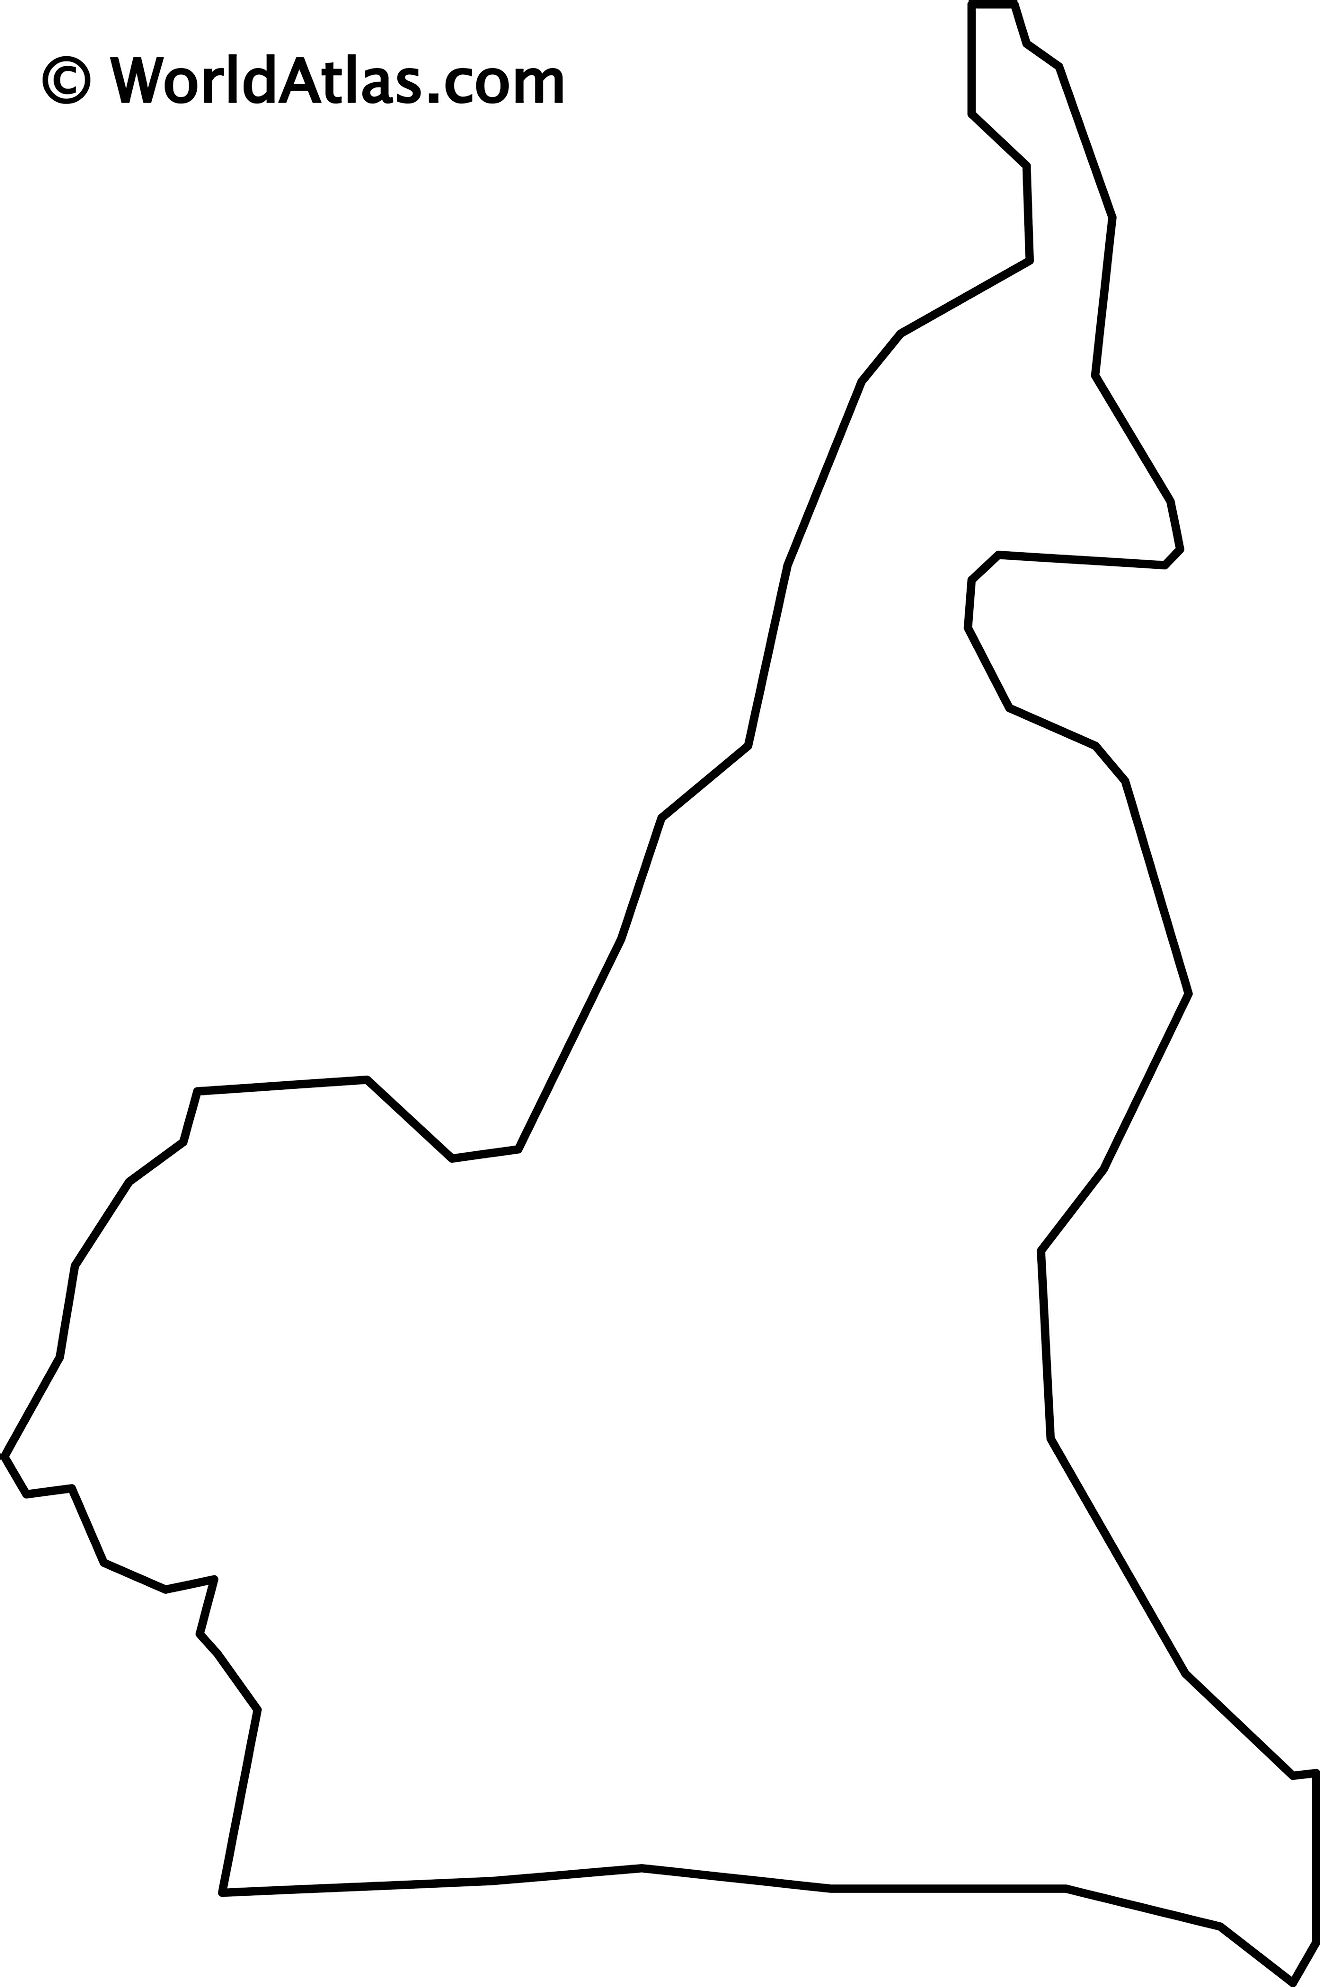 Mapa de contorno en blanco de Camerún